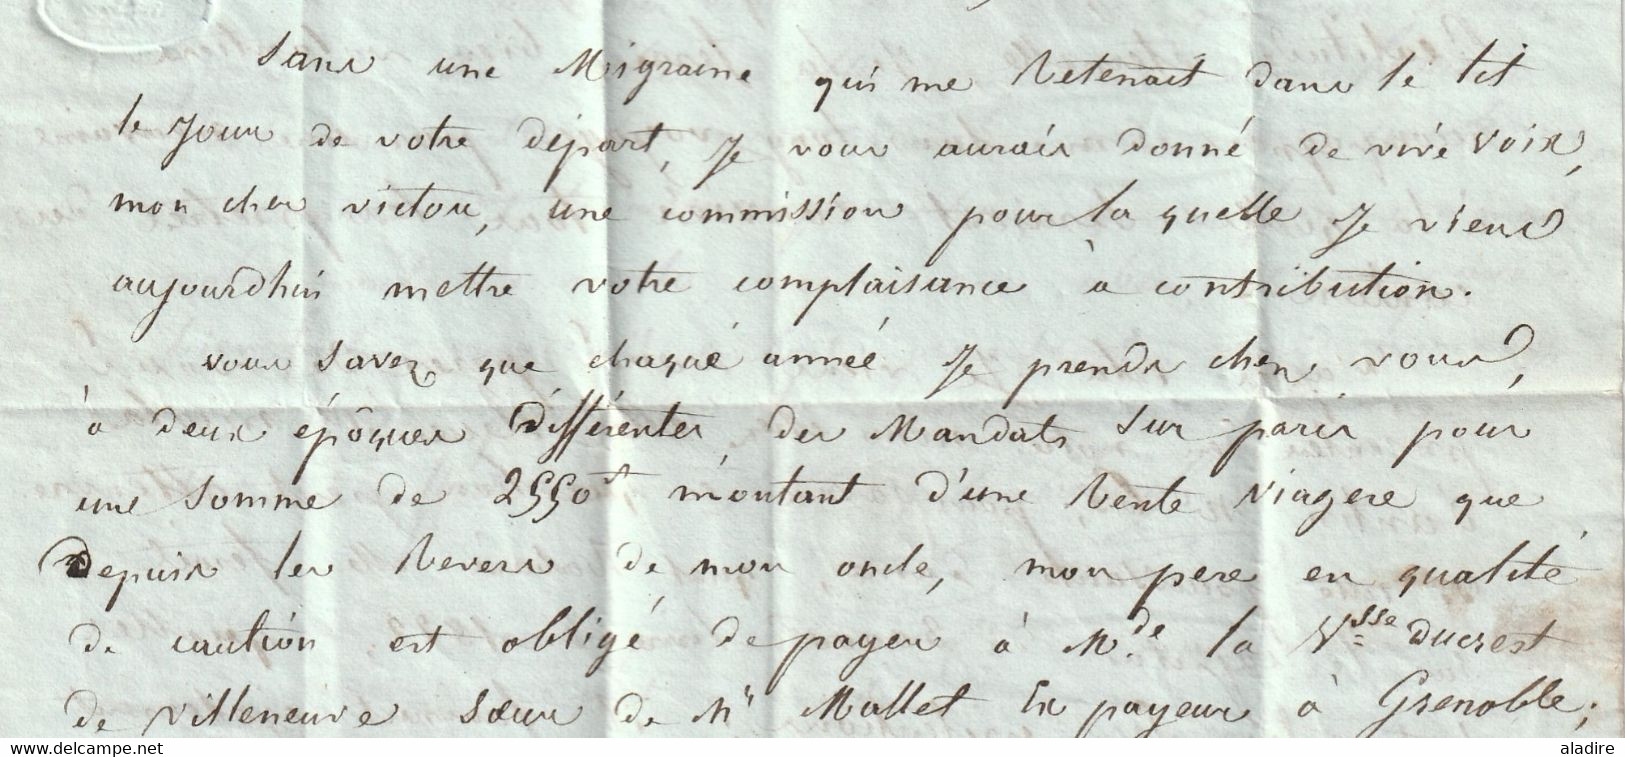 1837  - Lettre pliée avec corresp amicale de 3 p de RIVES, Isère vers PARIS - redirigée vers Luzarches, Val d'Oise